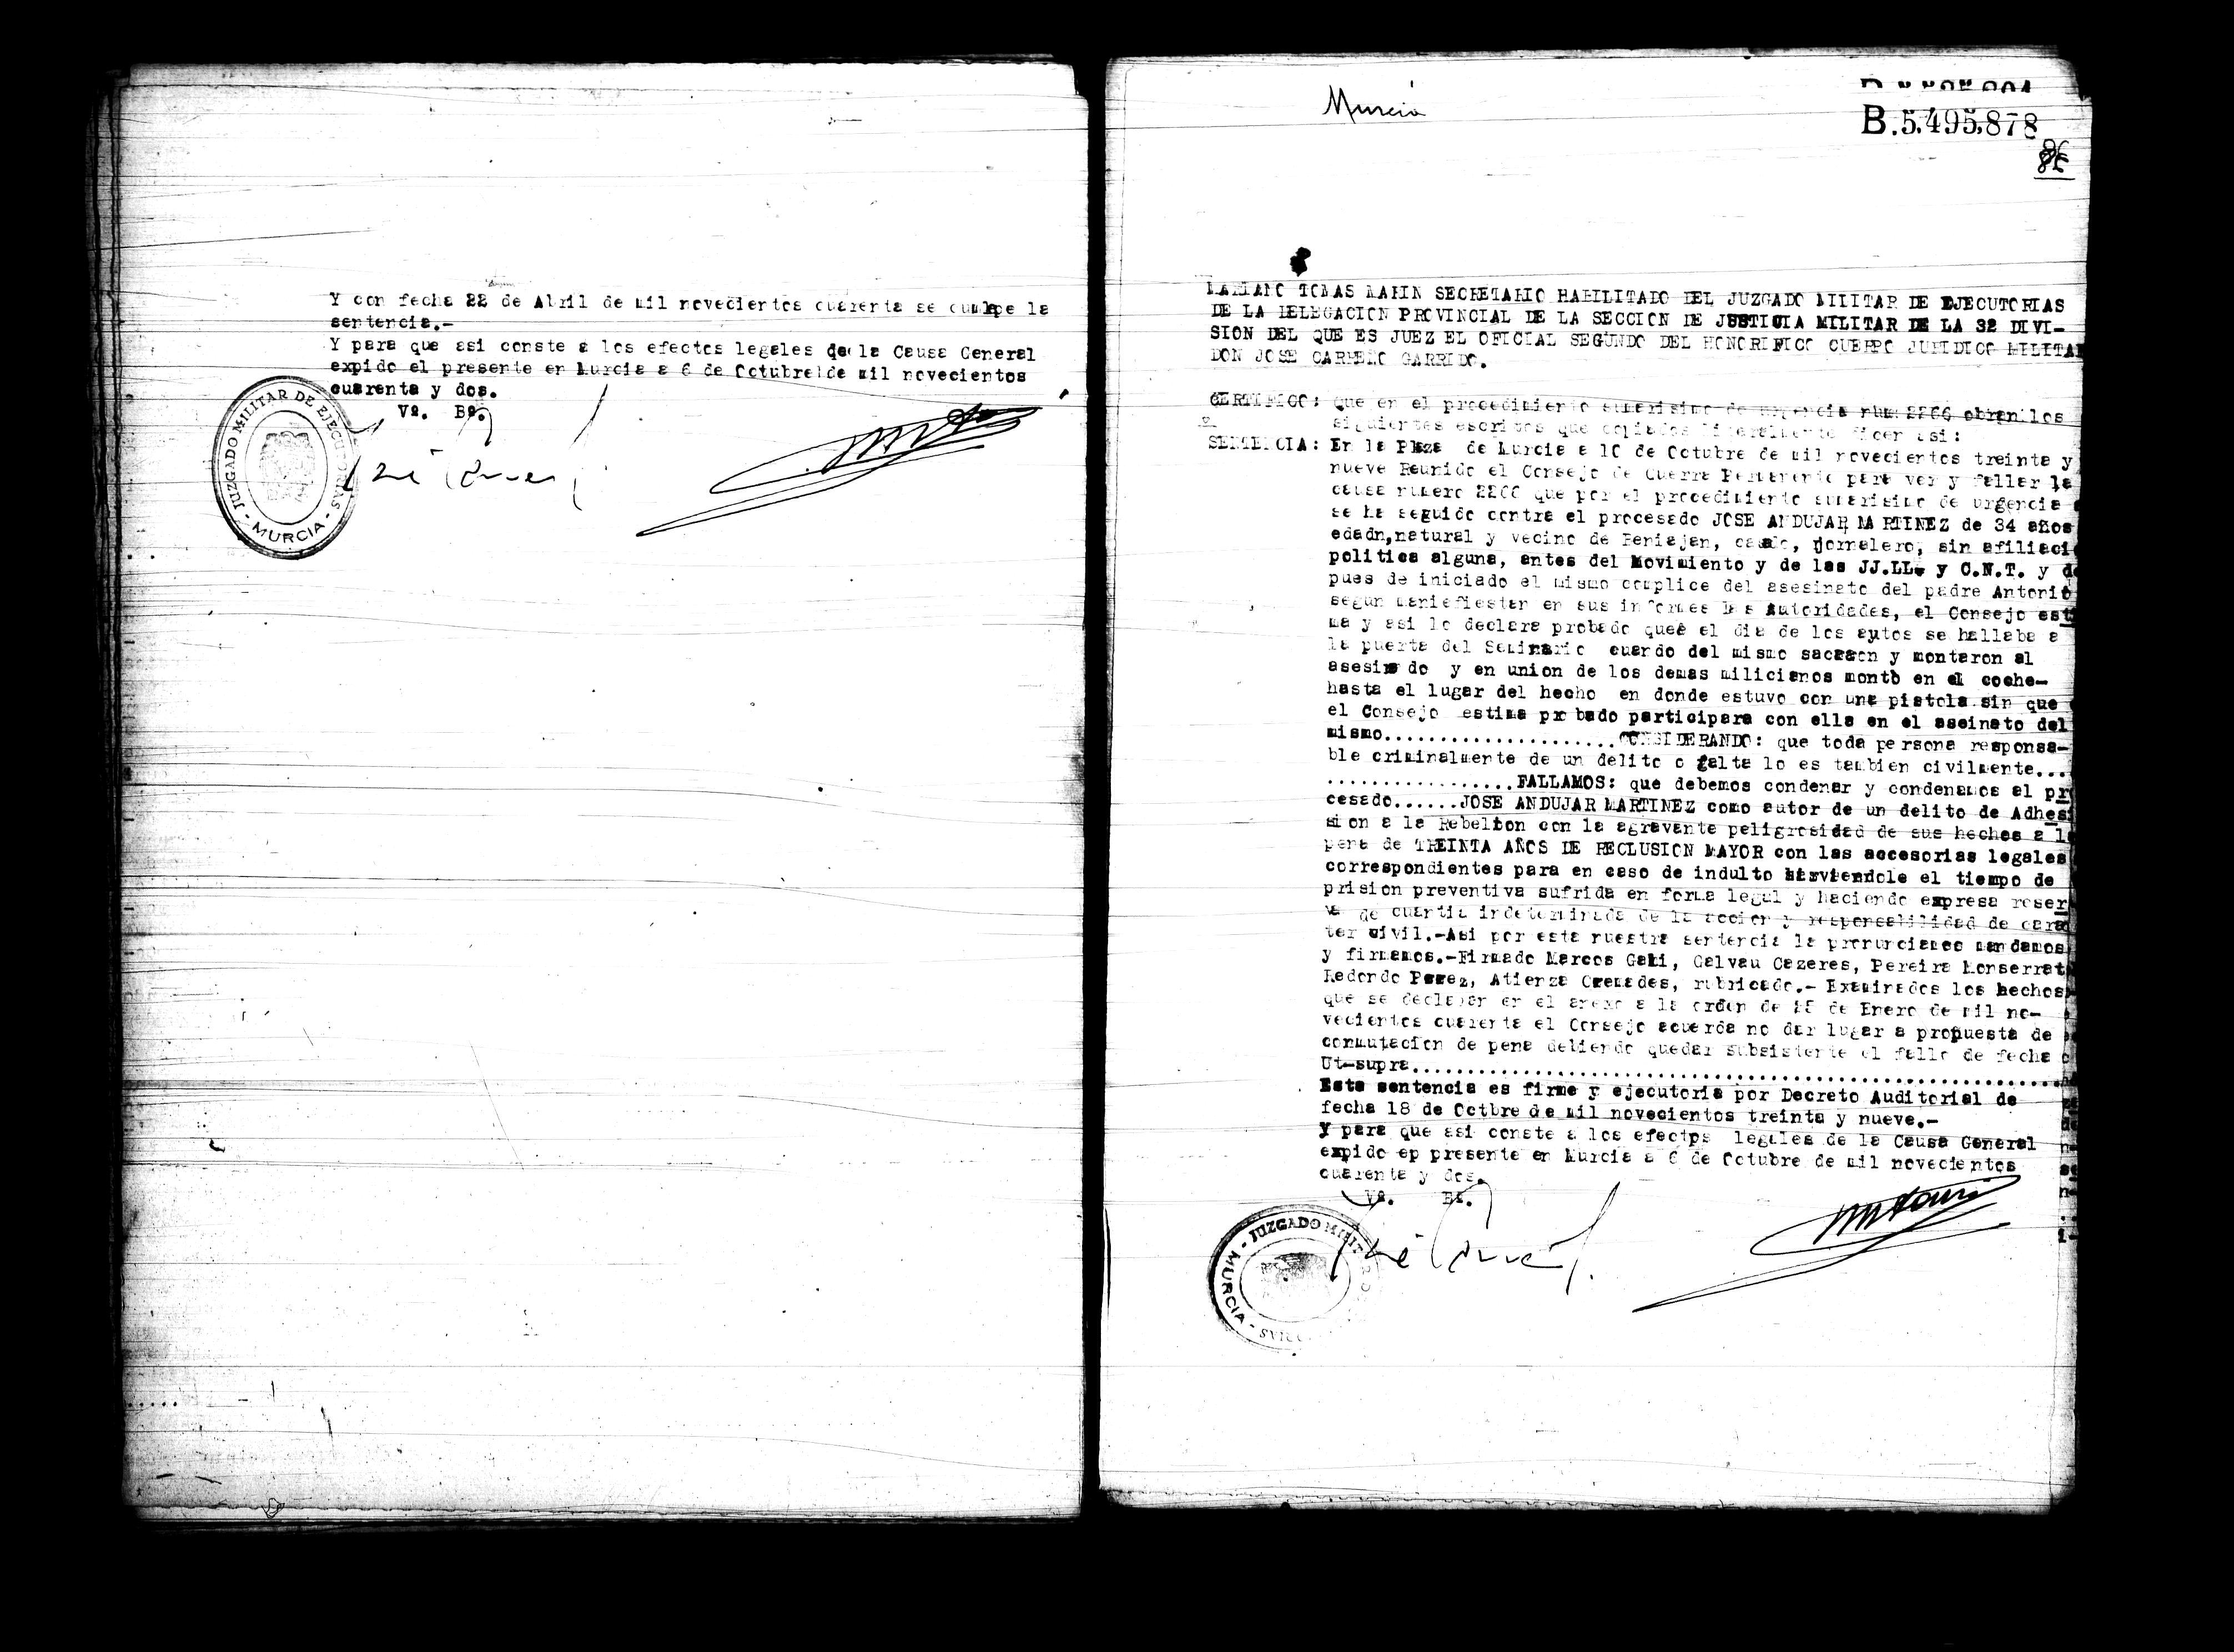 Certificado de la sentencia pronunciada contra José Andújar Martínez, causa 2266, el 10 de octubre de 1939 en Murcia.